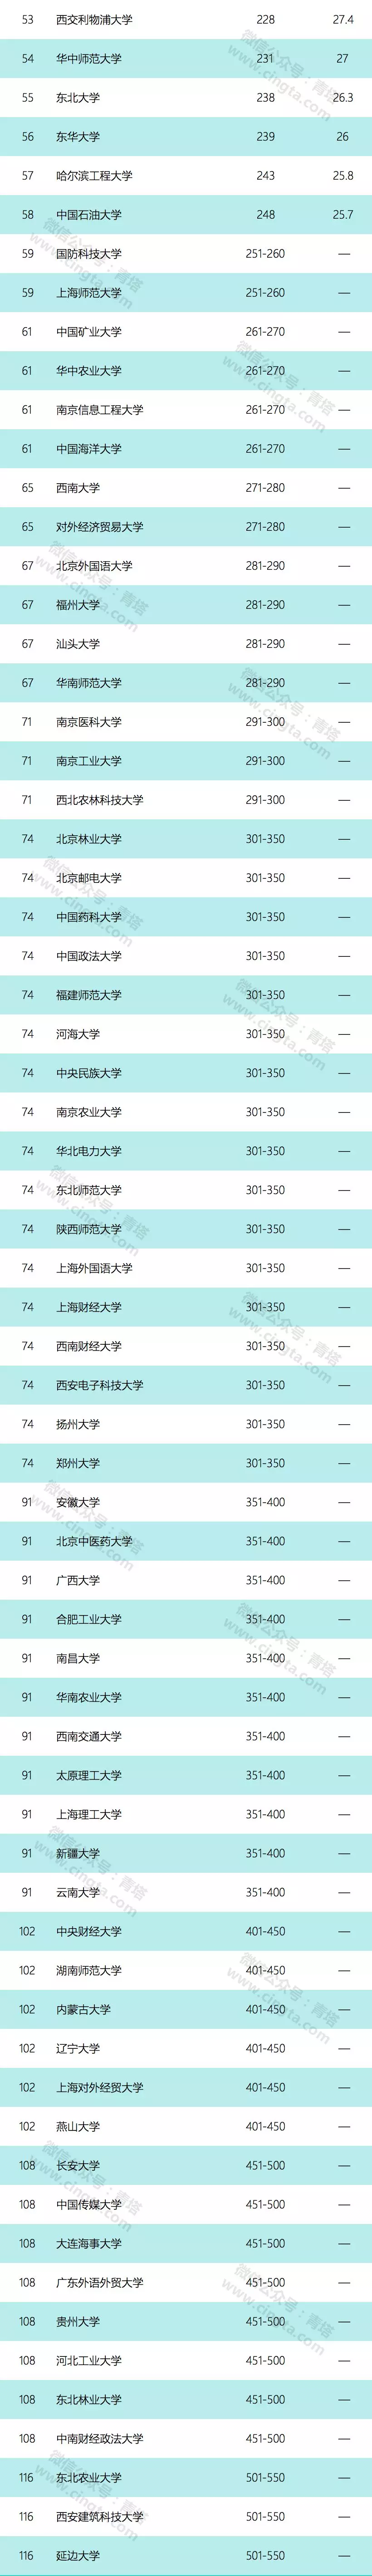 亚洲大学top100排行榜.png